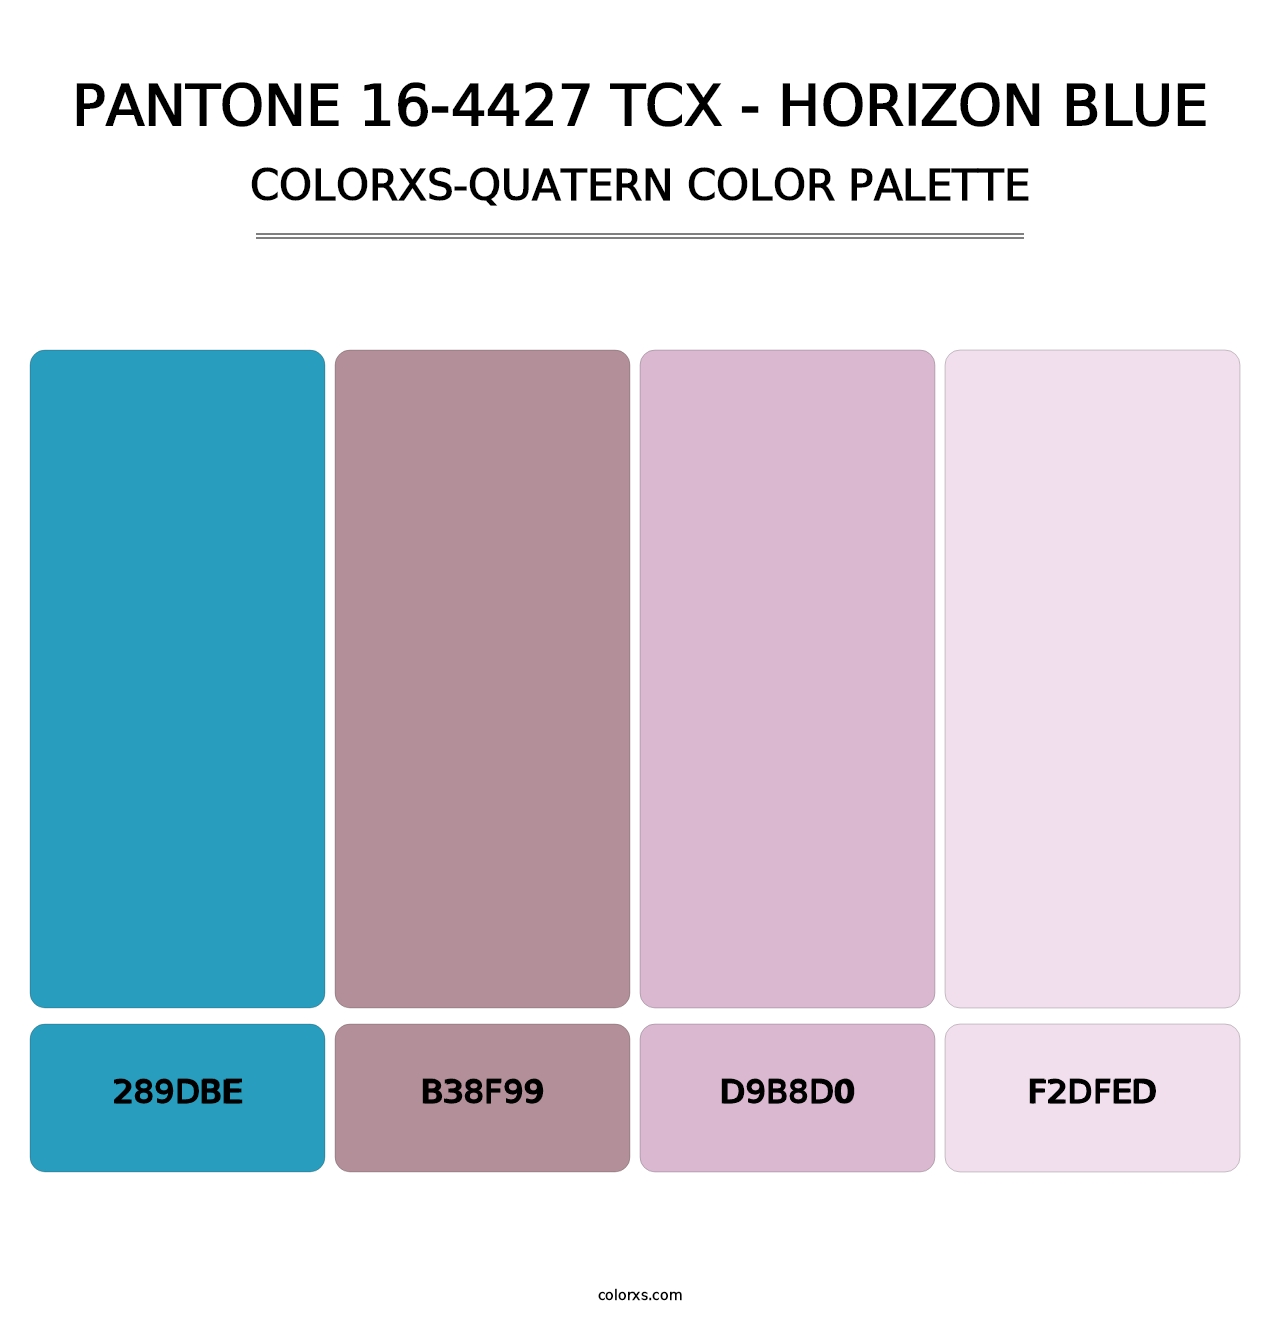 PANTONE 16-4427 TCX - Horizon Blue - Colorxs Quatern Palette